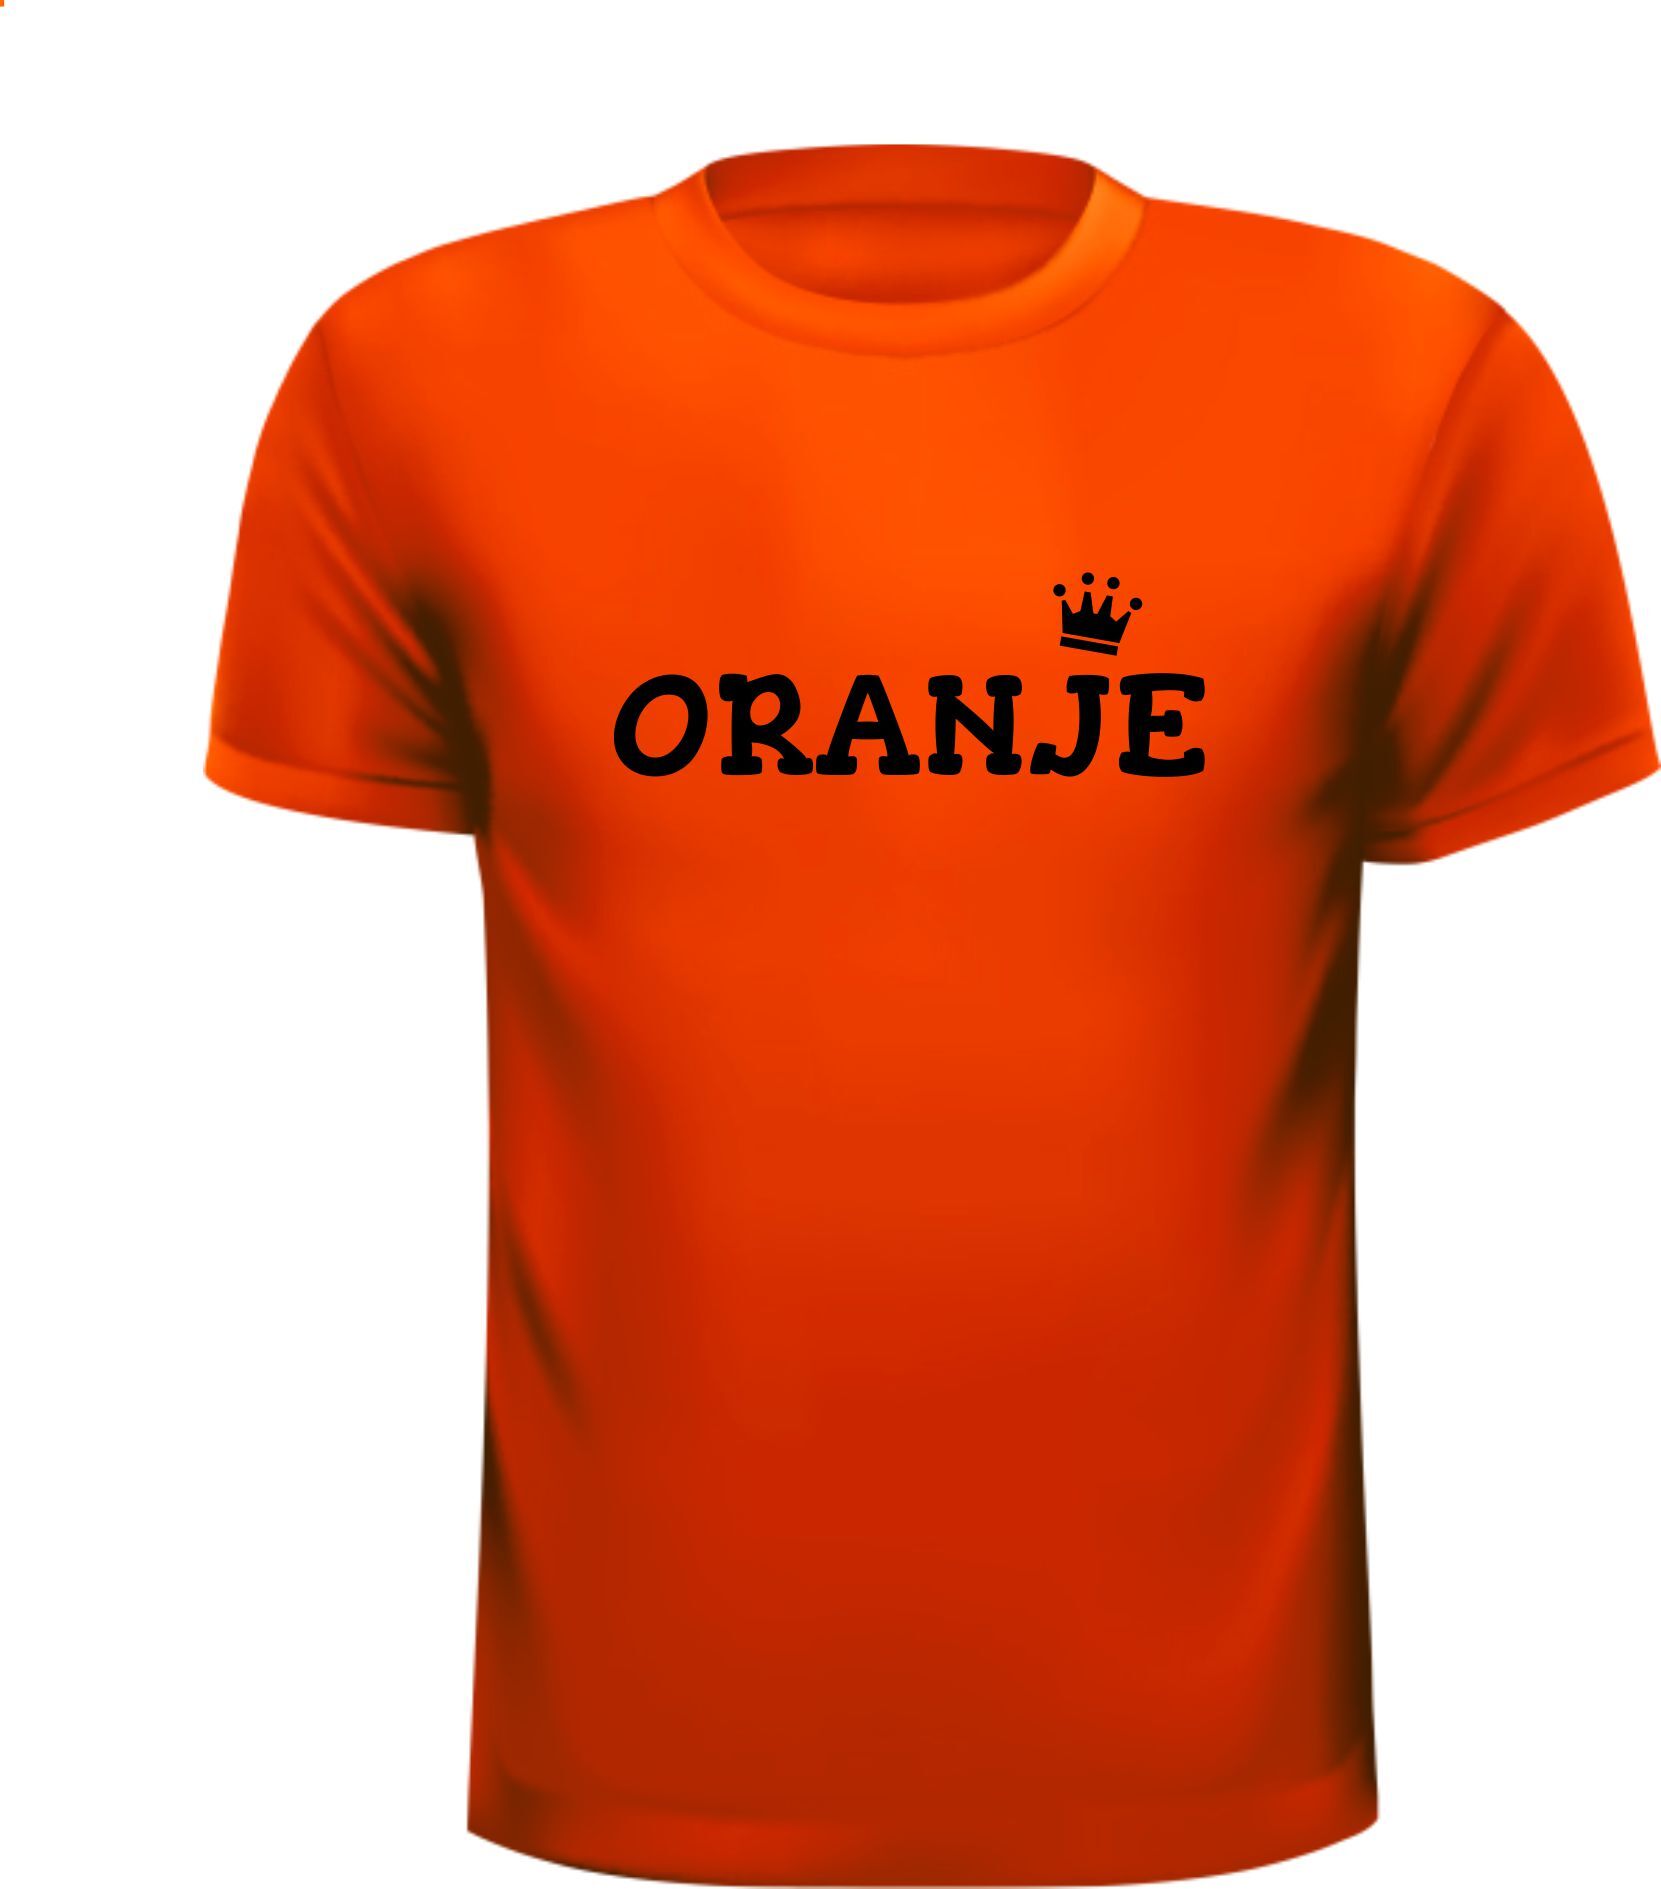 Oranje shirtje voor koningsdag